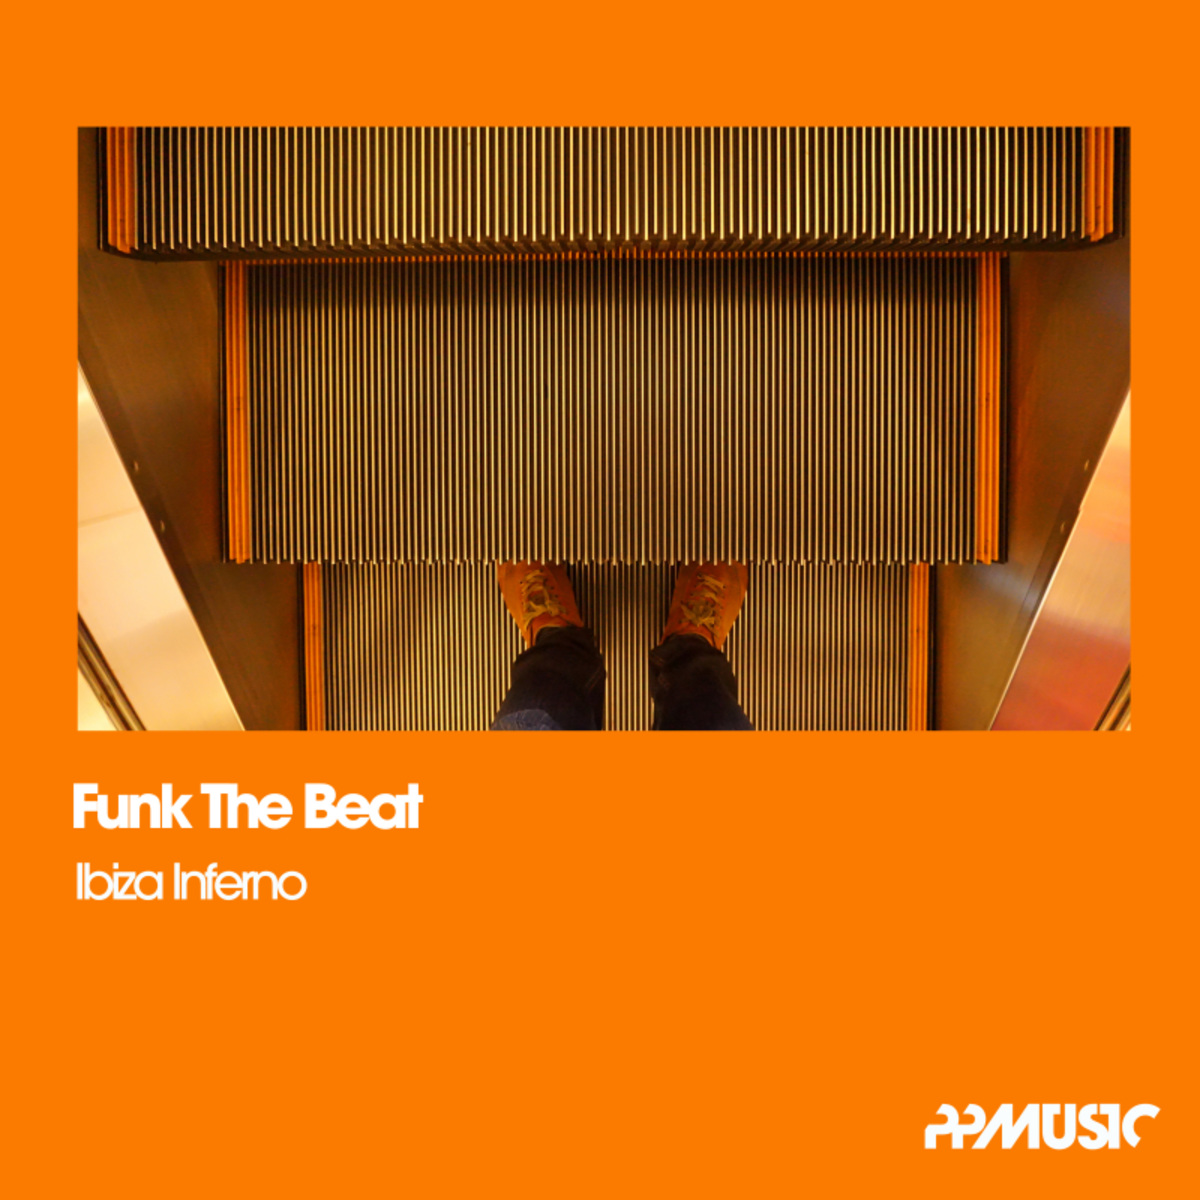 Funk The Beat - Ibiza Inferno (Playa Mix) / PPMUSIC